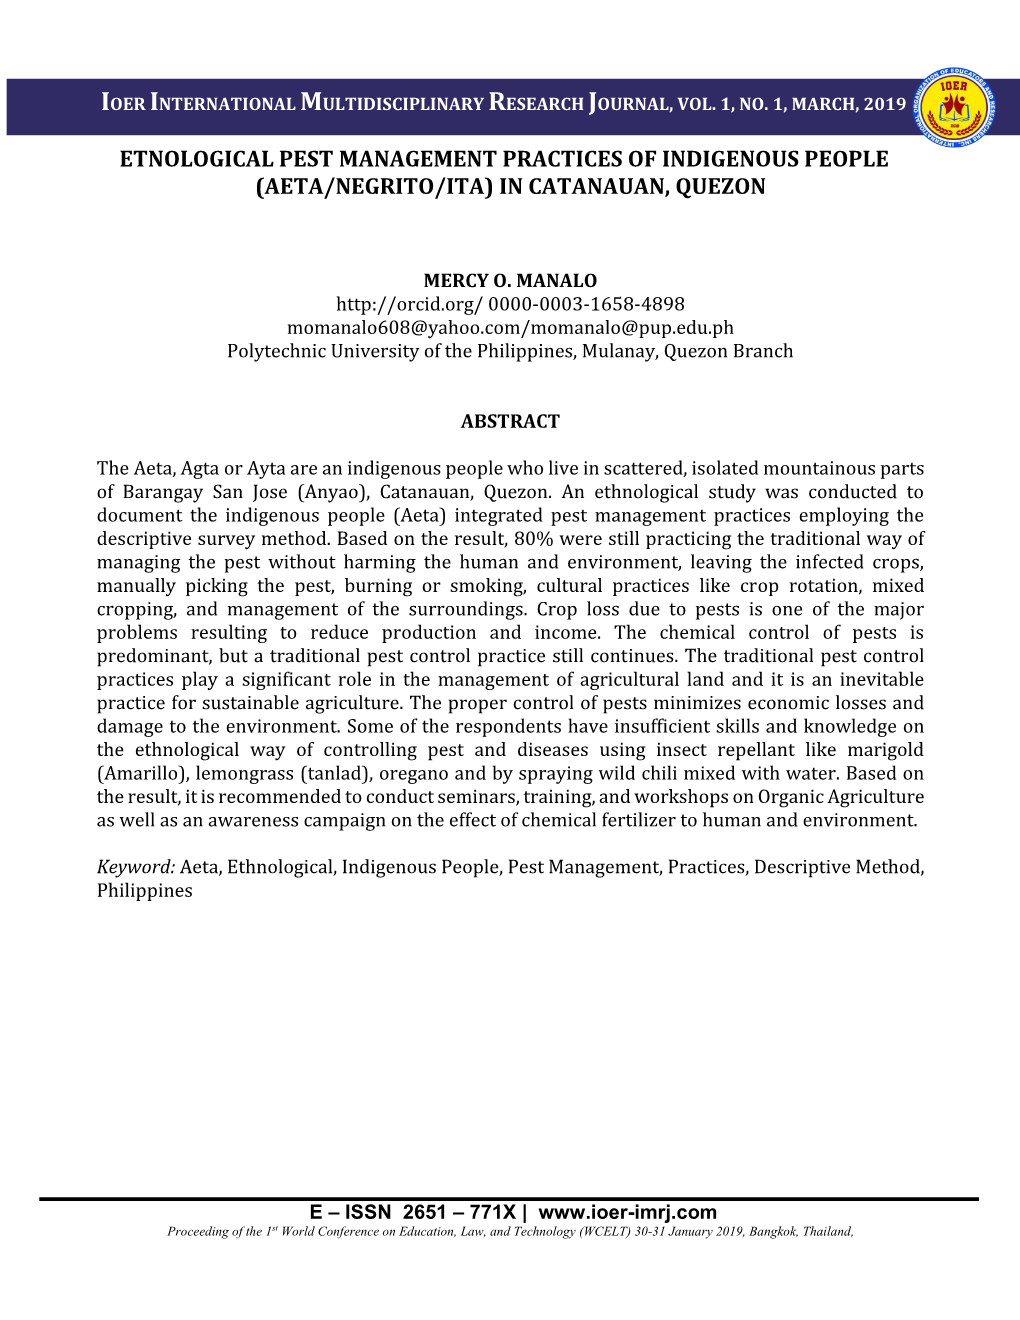 Etnological Pest Management Practices of Indigenous People (Aeta/Negrito/Ita) in Catanauan, Quezon